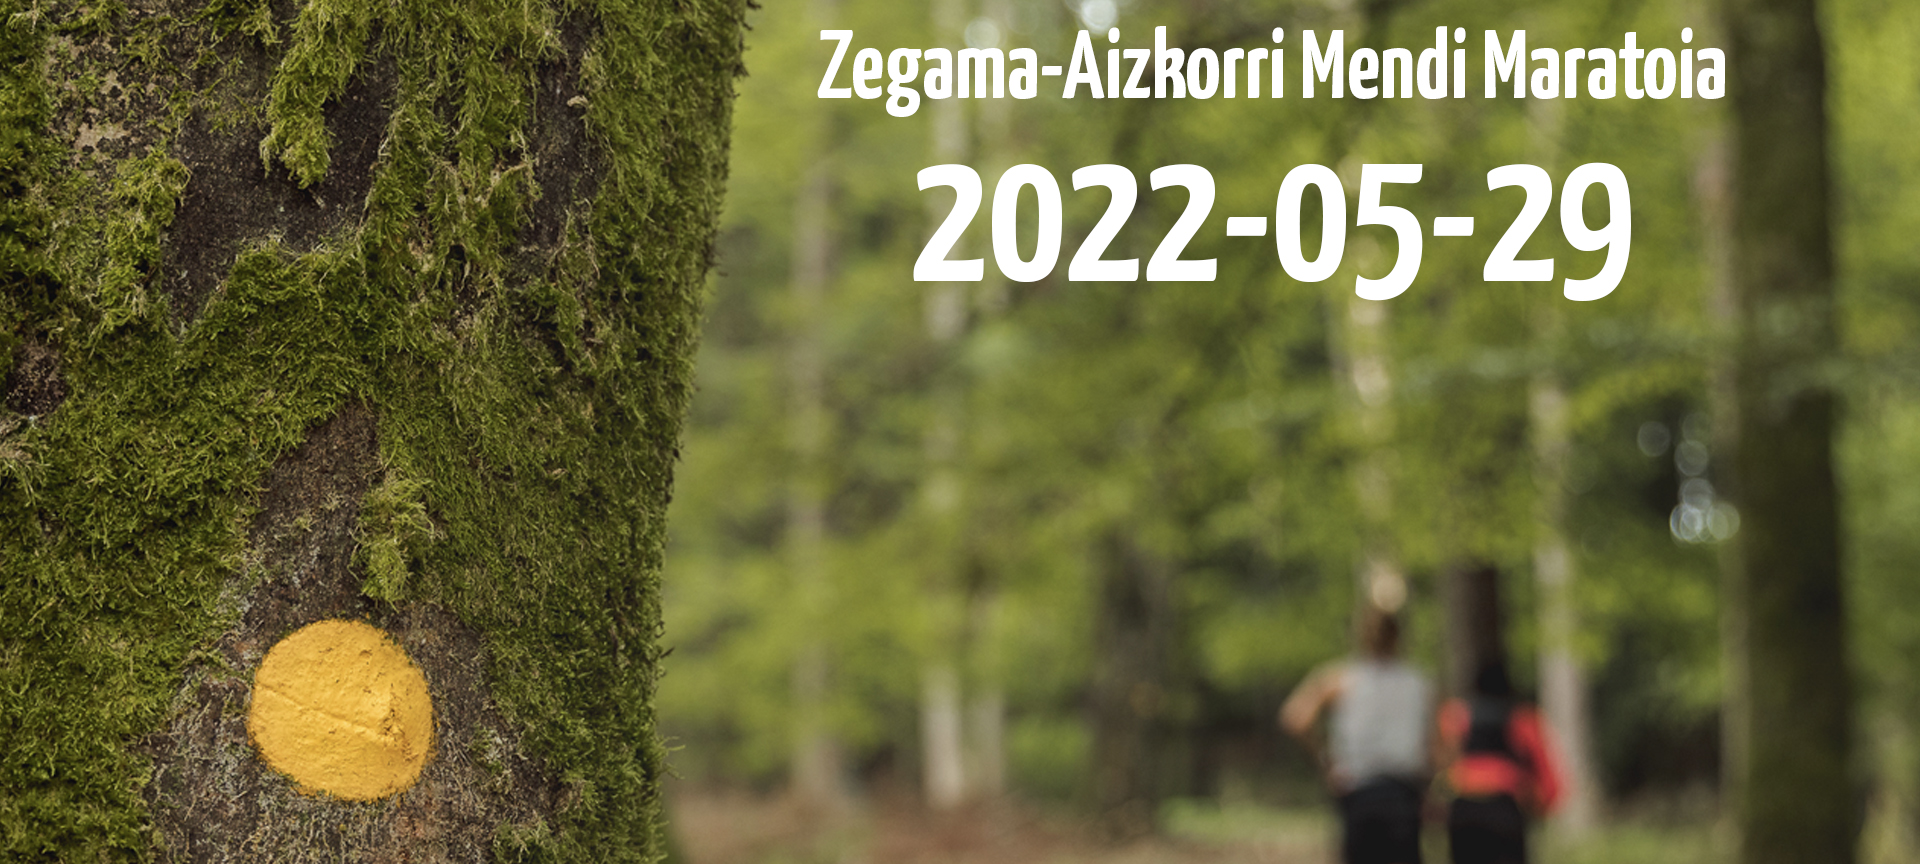 Zegama-Aizkorri 2022 is back!